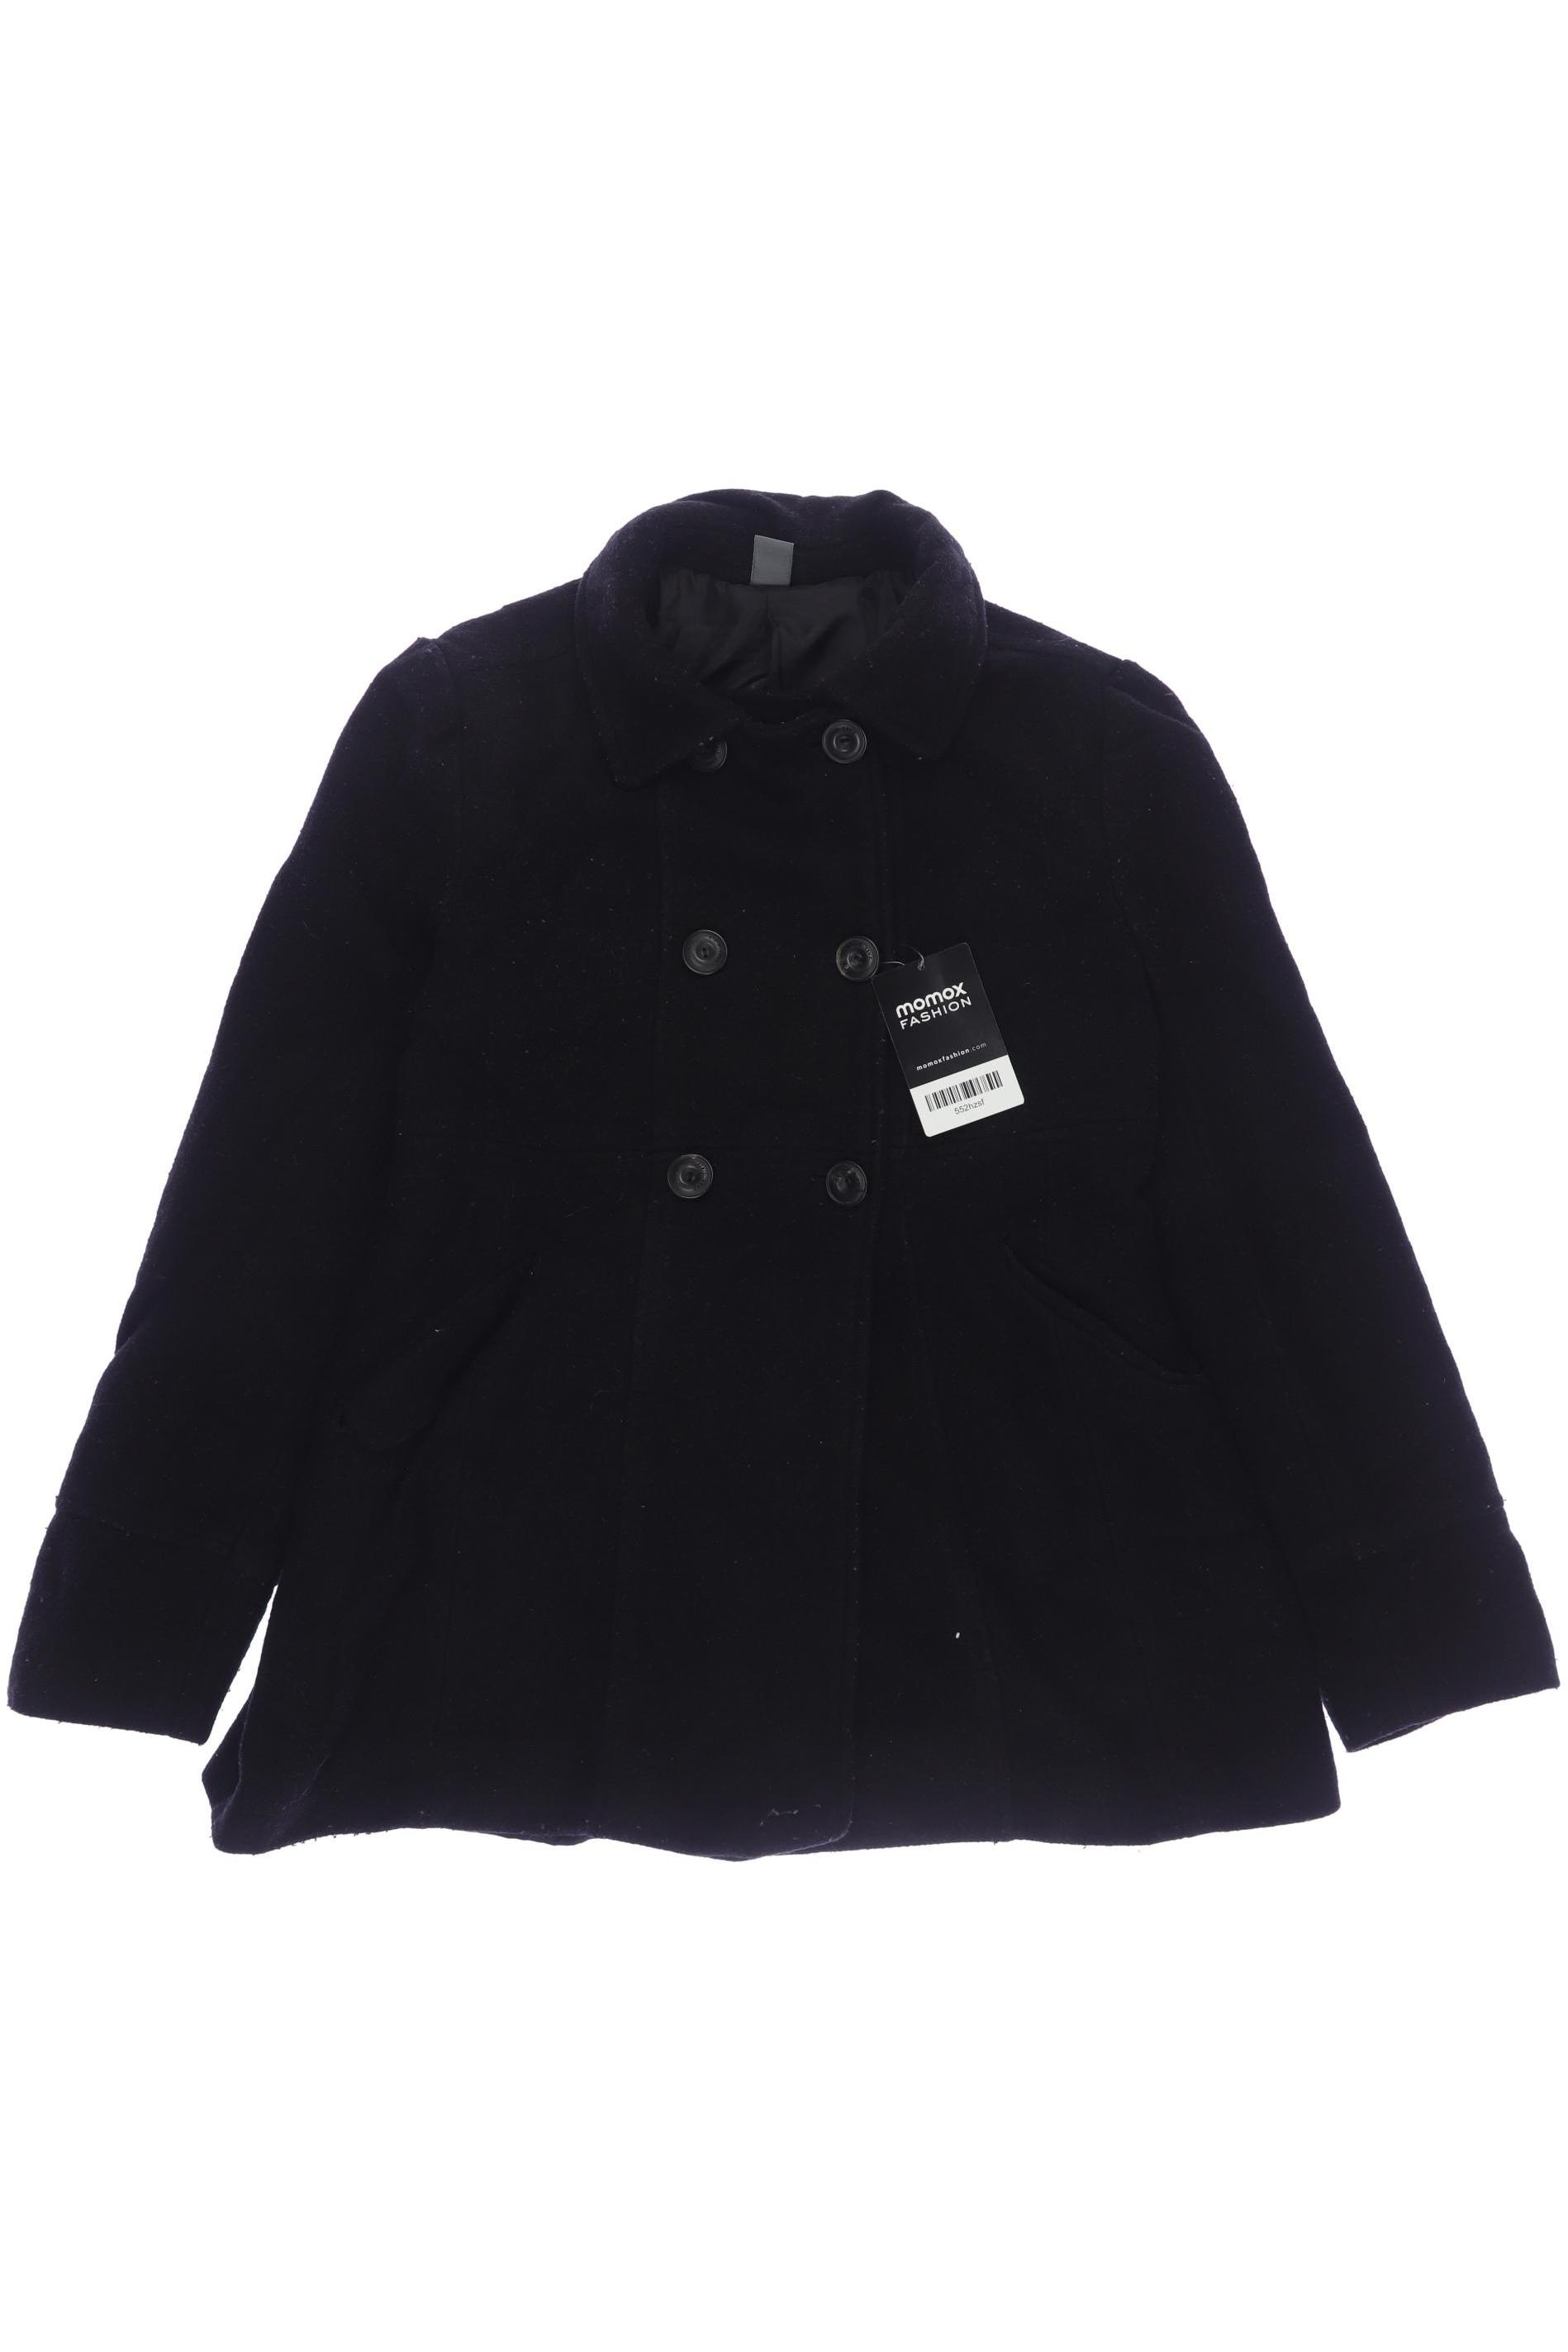 Zara Damen Jacke, schwarz, Gr. 164 von ZARA